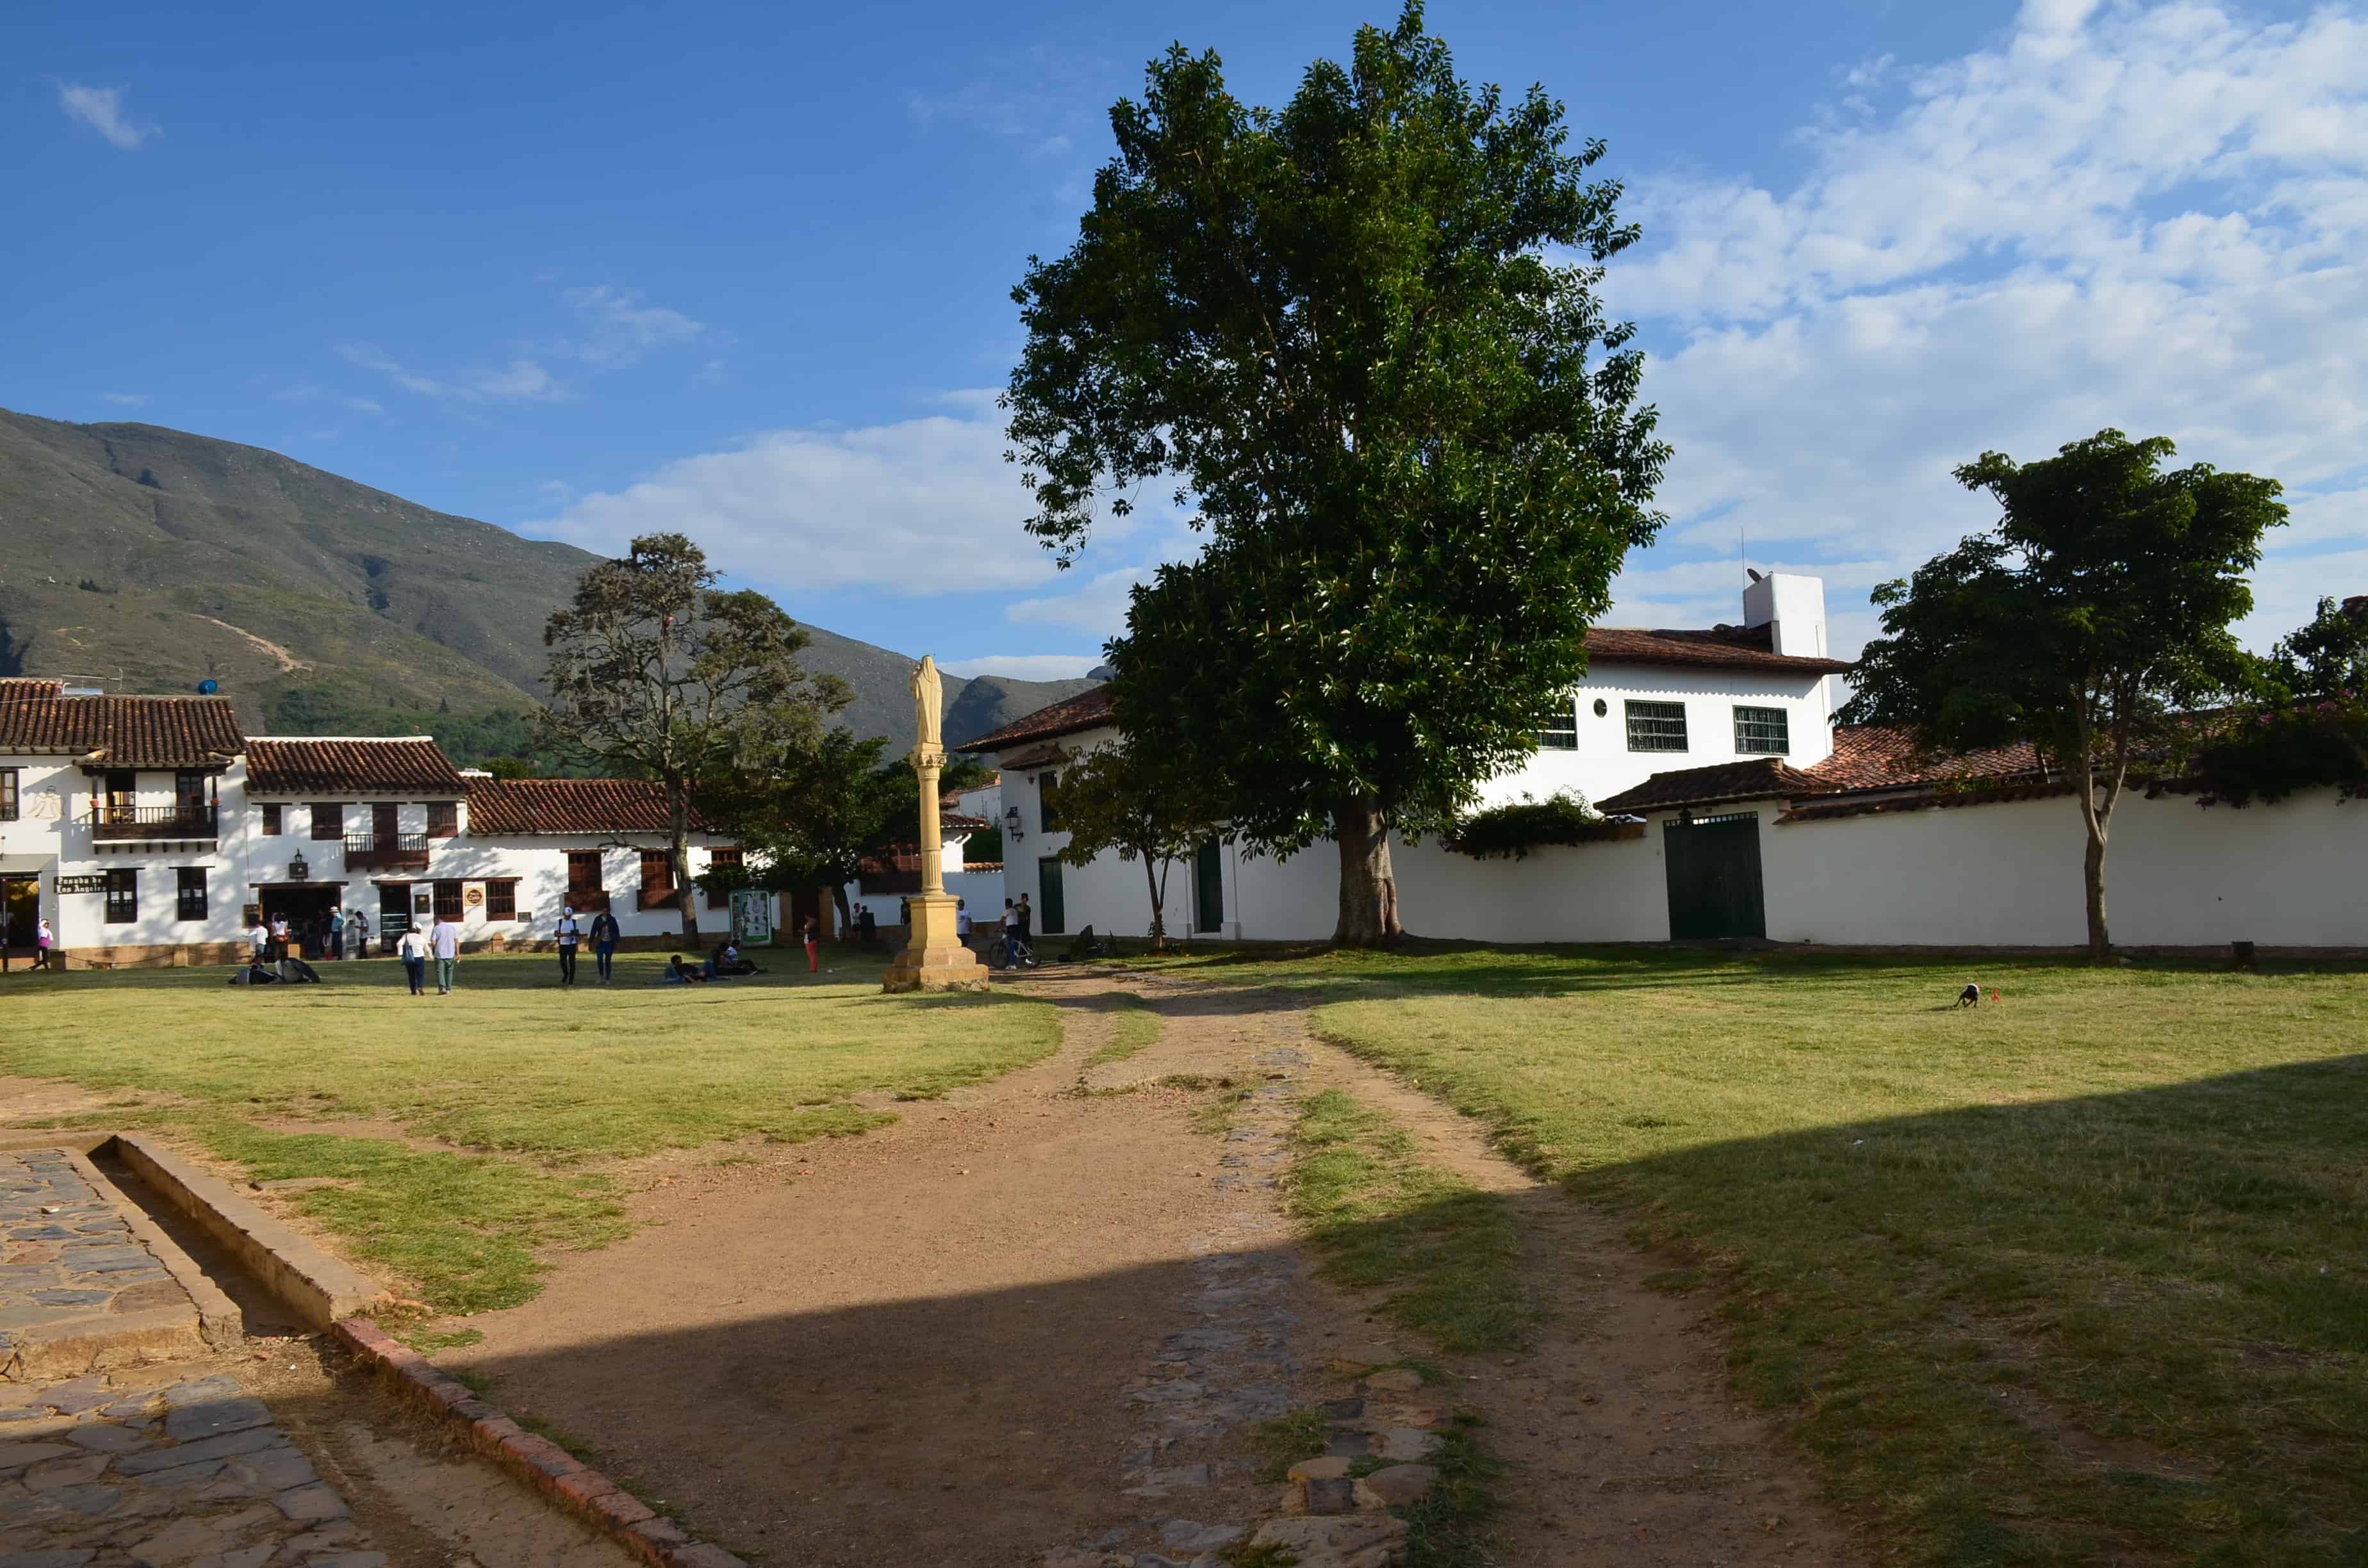 Plazuela del Carmen in Villa de Leyva, Boyacá, Colombia